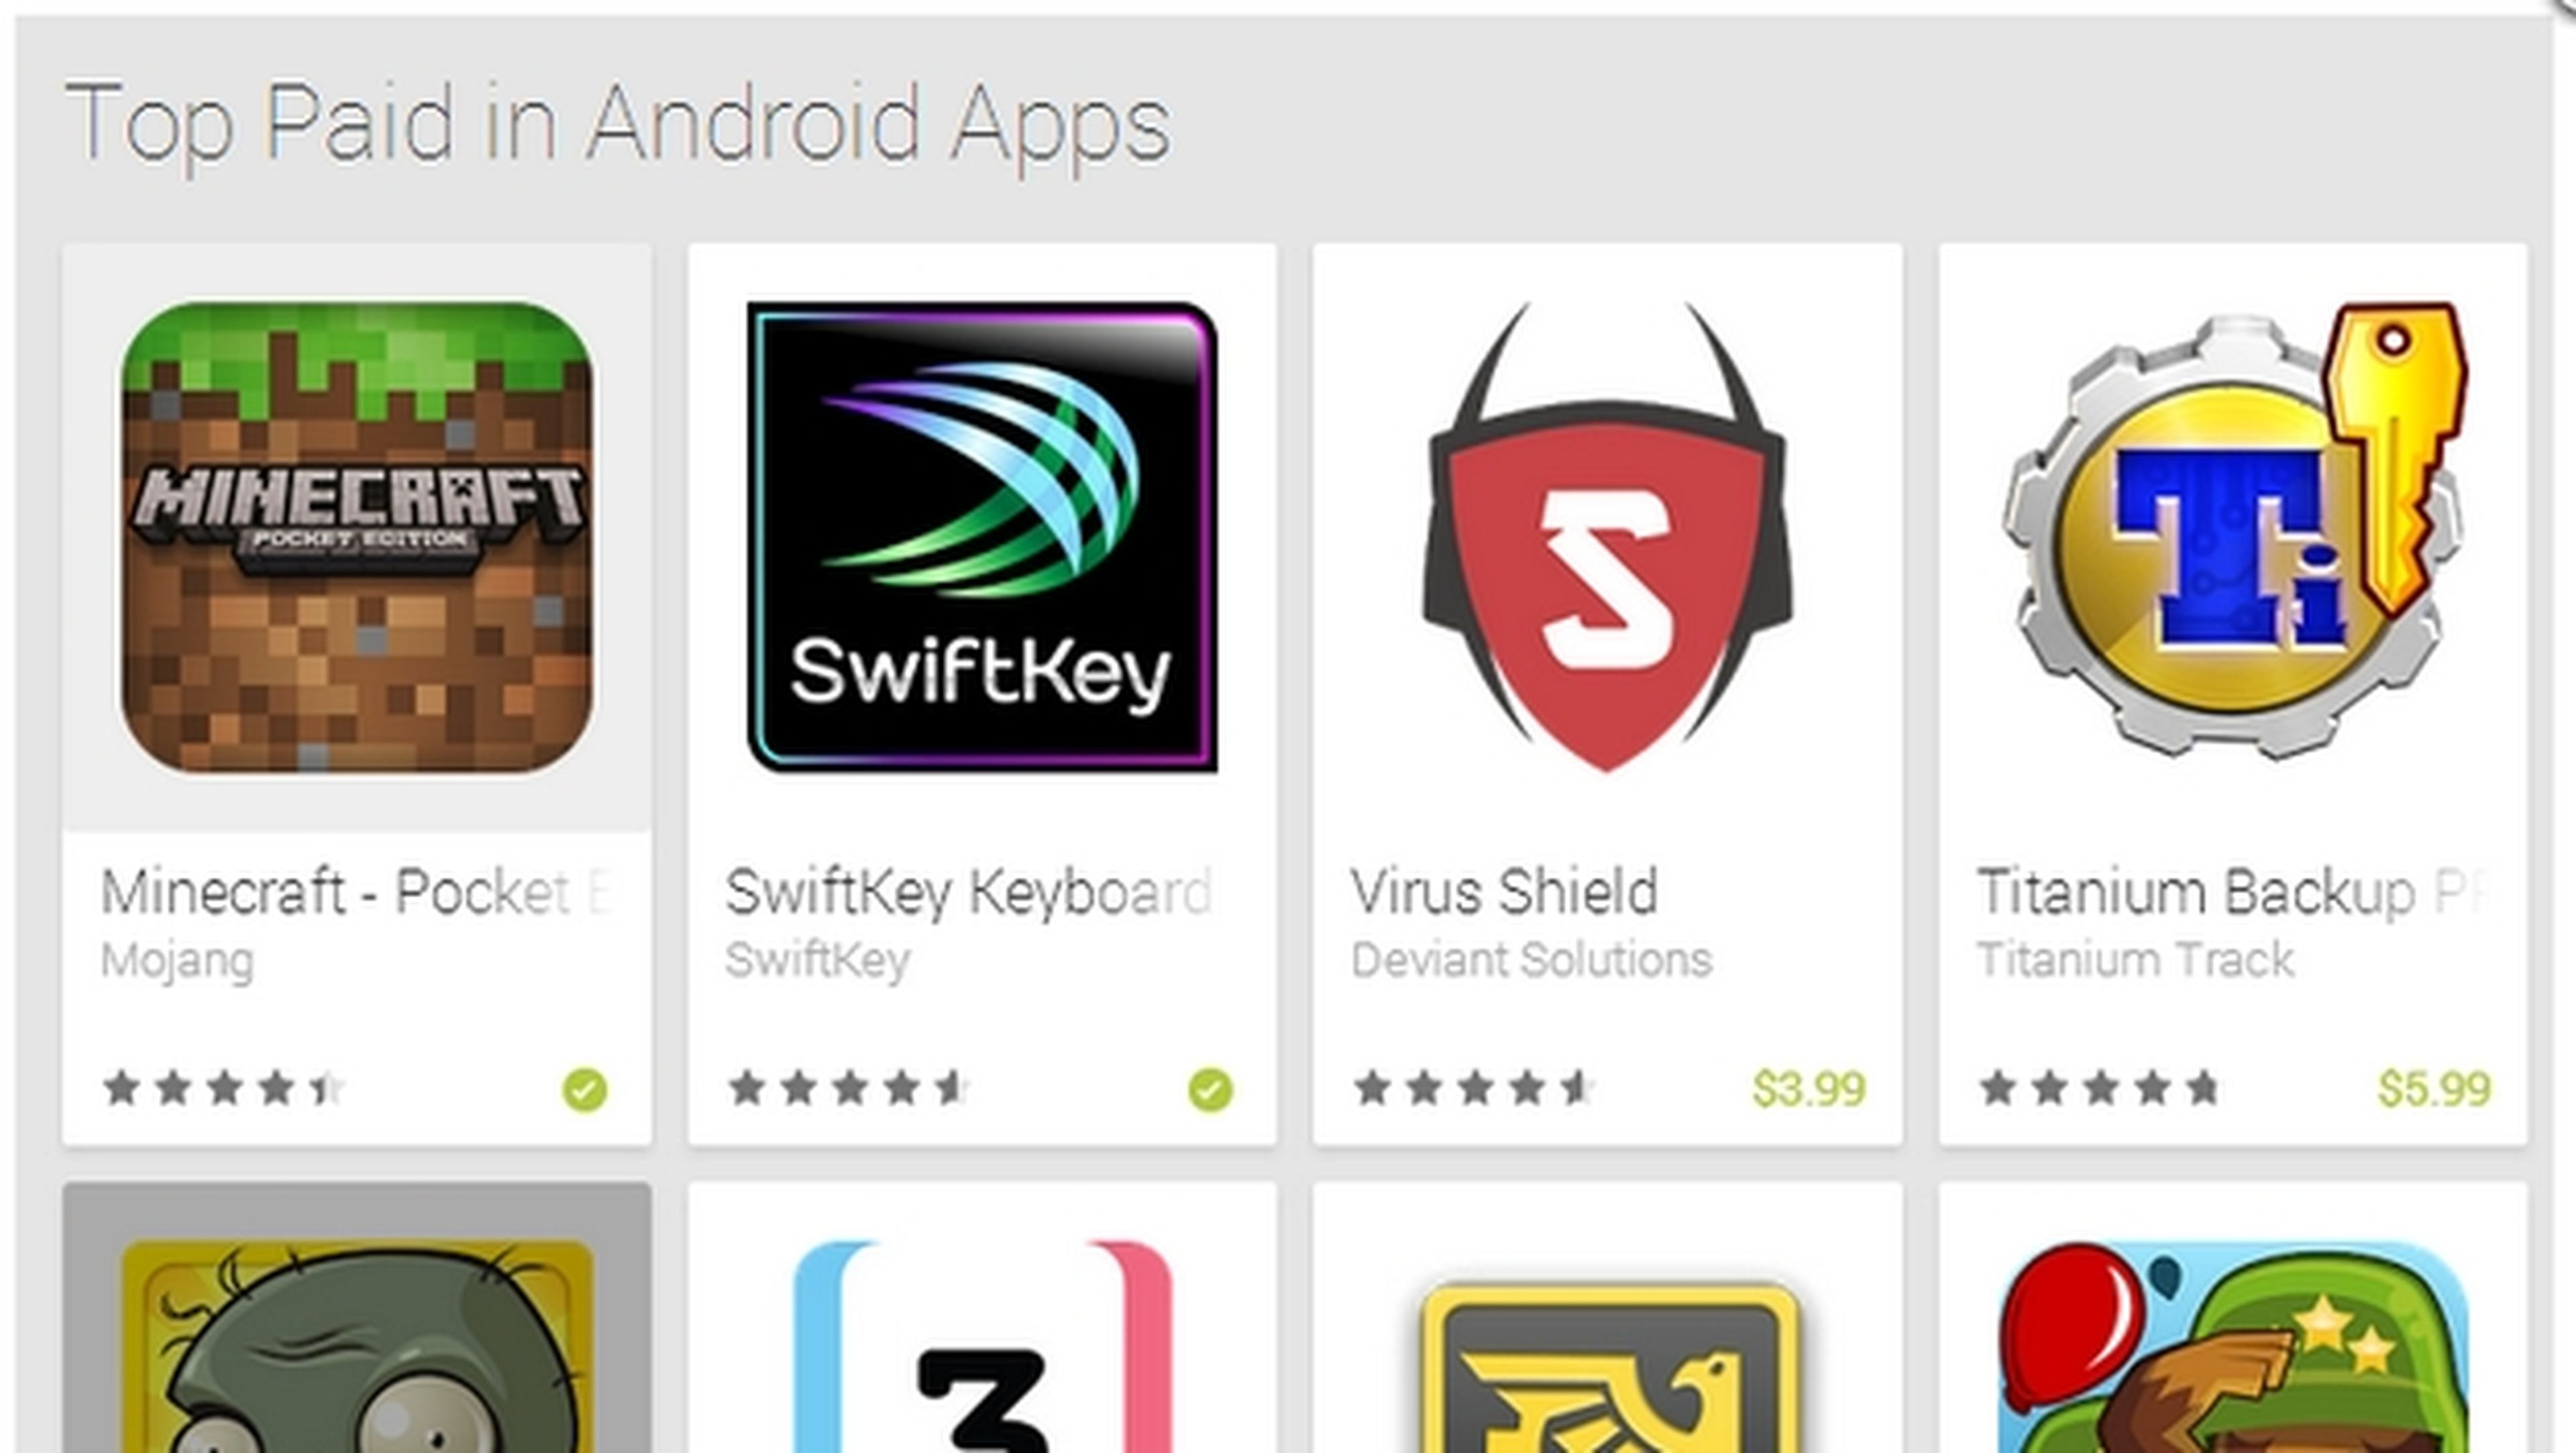 Virus Shield, app de pago de Android número 1 en ventas en Google Play, es un fraude